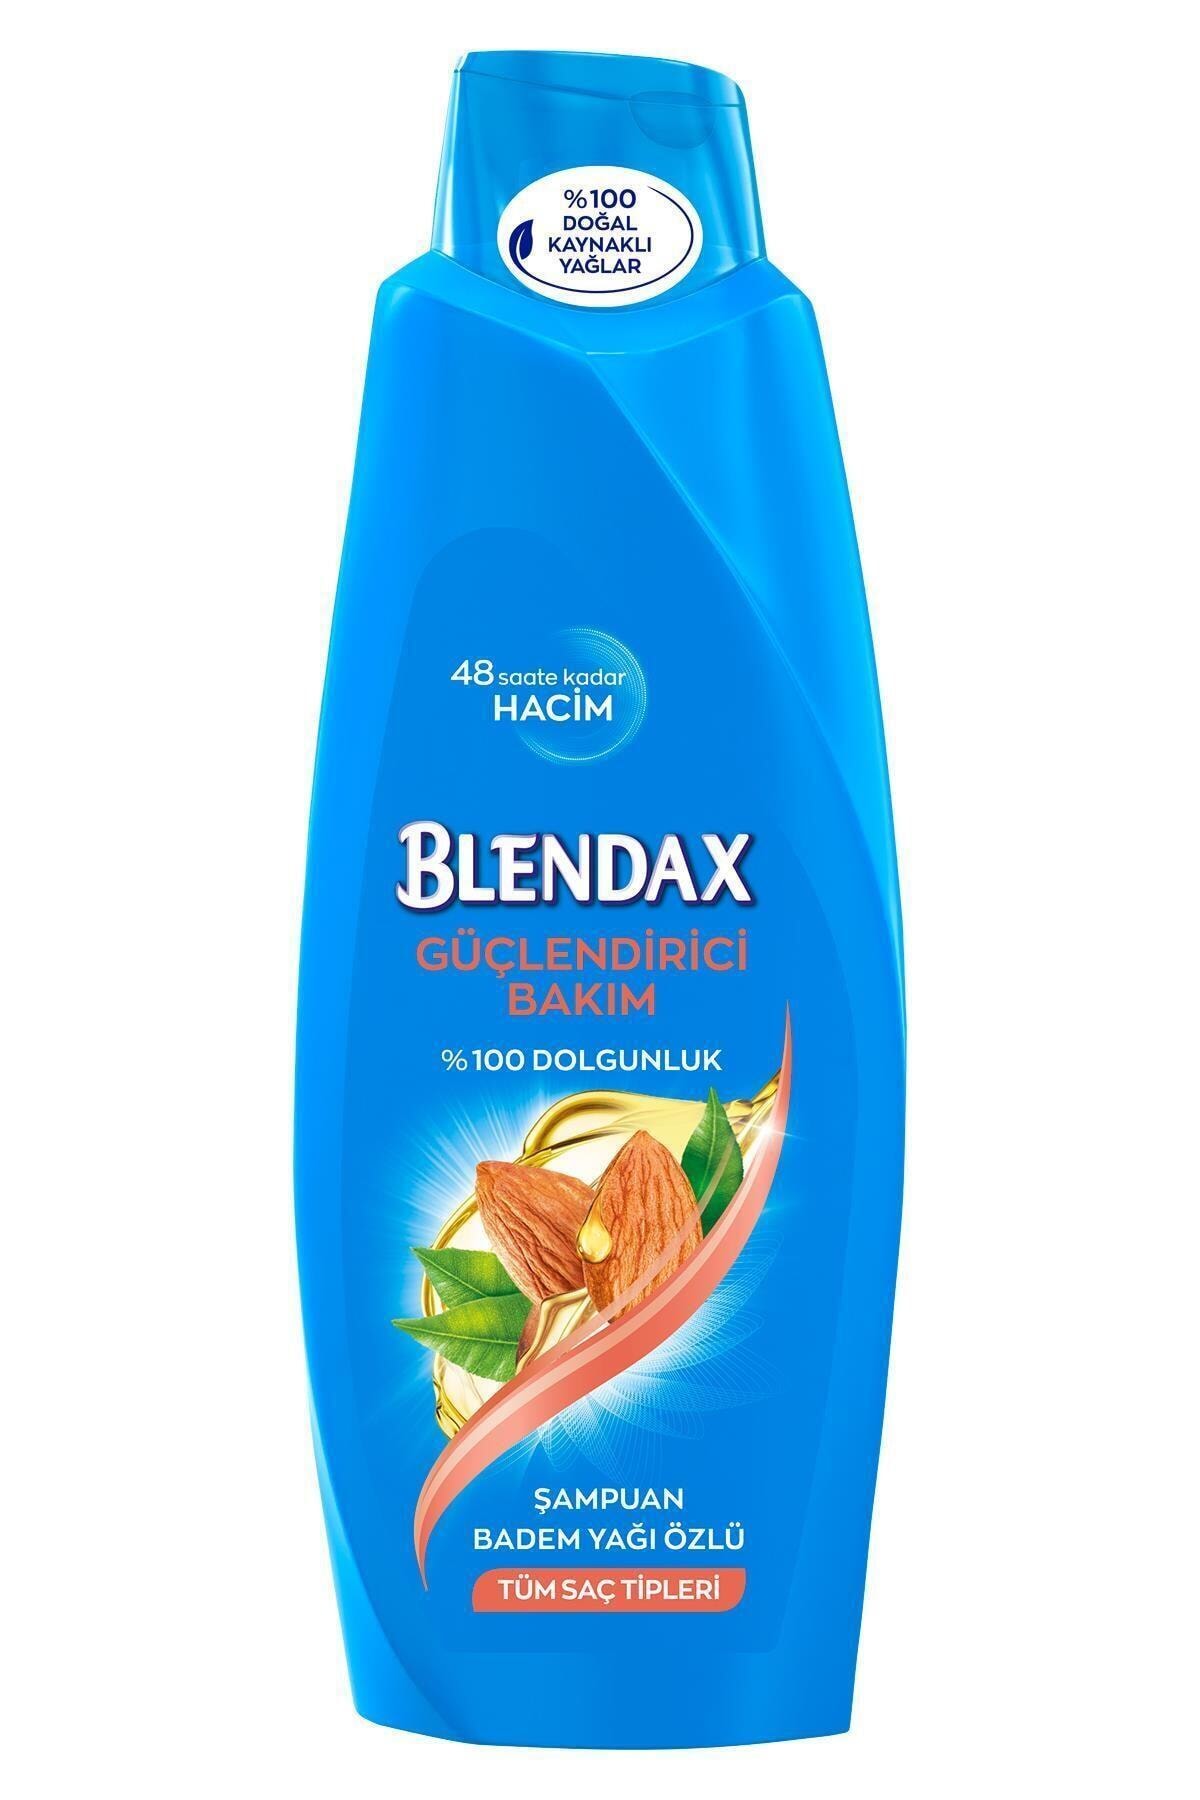 Blendax Badem Yağı Özlü Şampuan 550 ml